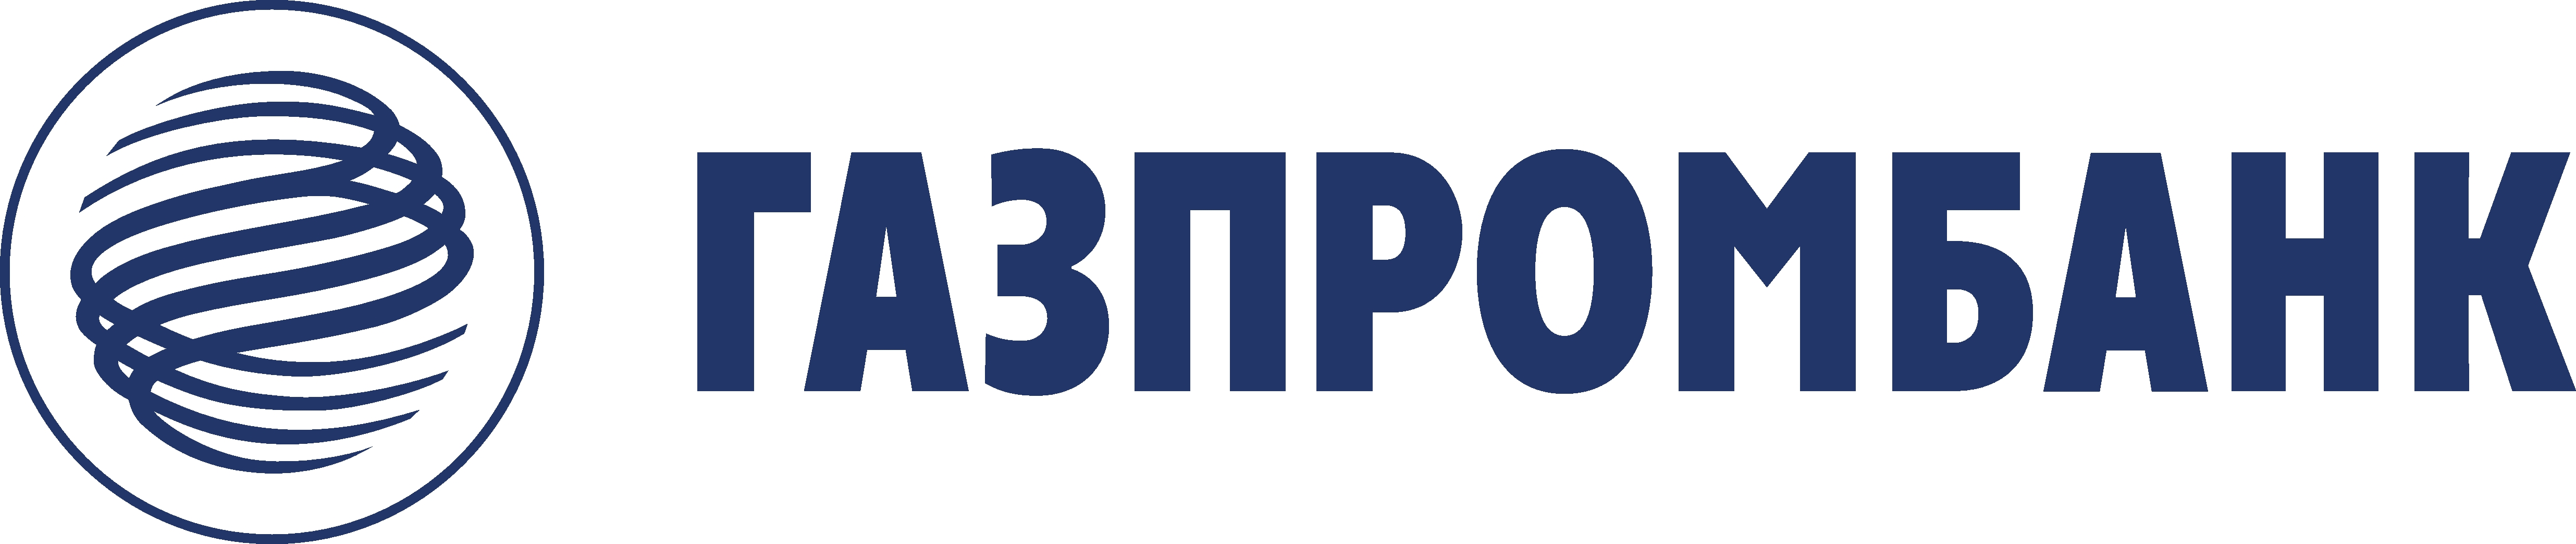 Газпромбанк подписал договор банковского сопровождения государственного контракта «Строительство железнодорожного мостового перехода через реку Амур в Еврейской автономной области» - «Газпромбанк»